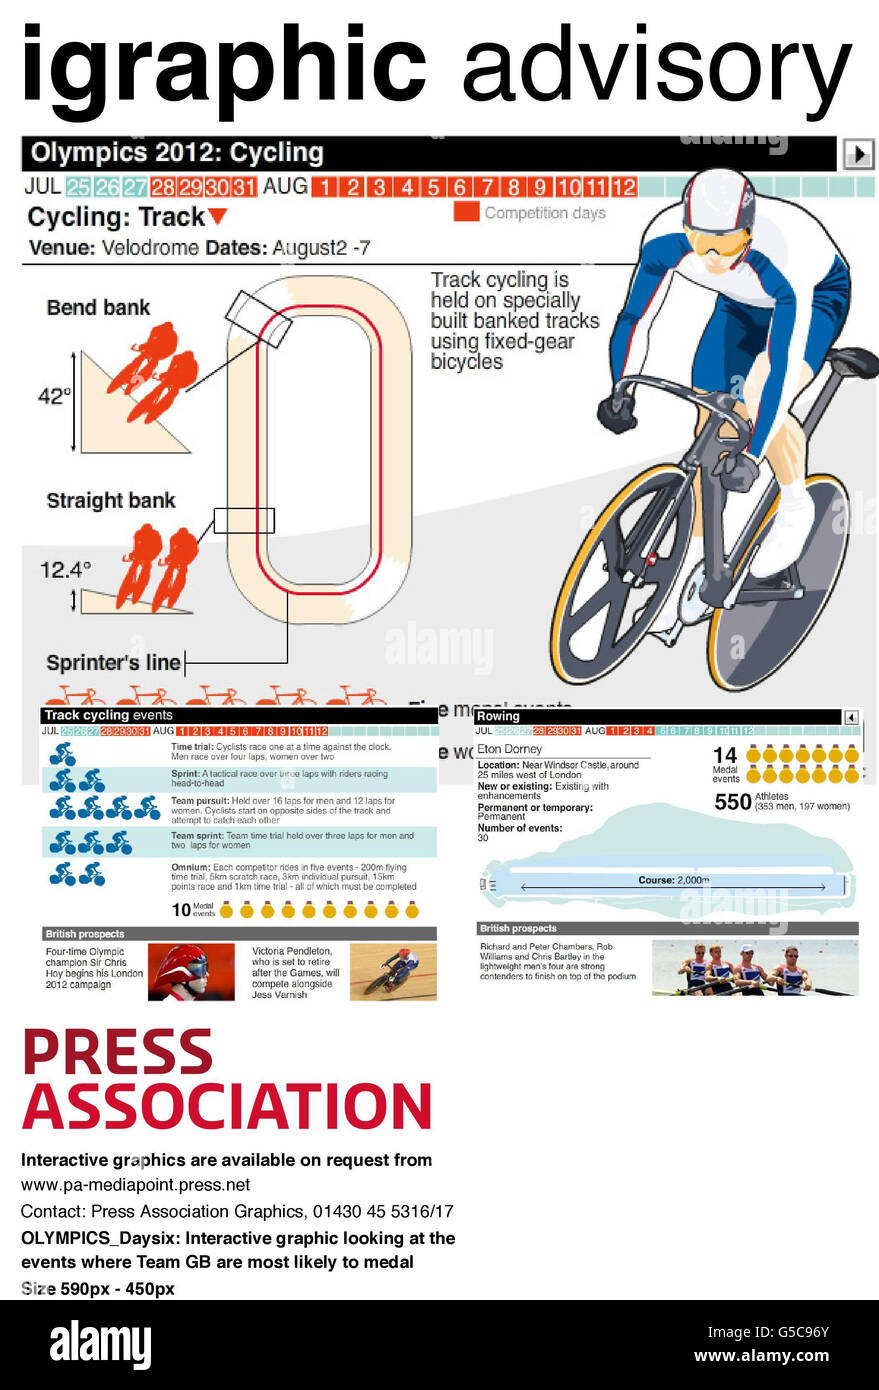 OLIMPIADAS día seis: Gráfico interactivo mirando los eventos, pista de ciclismo y remo, donde el equipo GB es más probable que la medalla Foto de stock